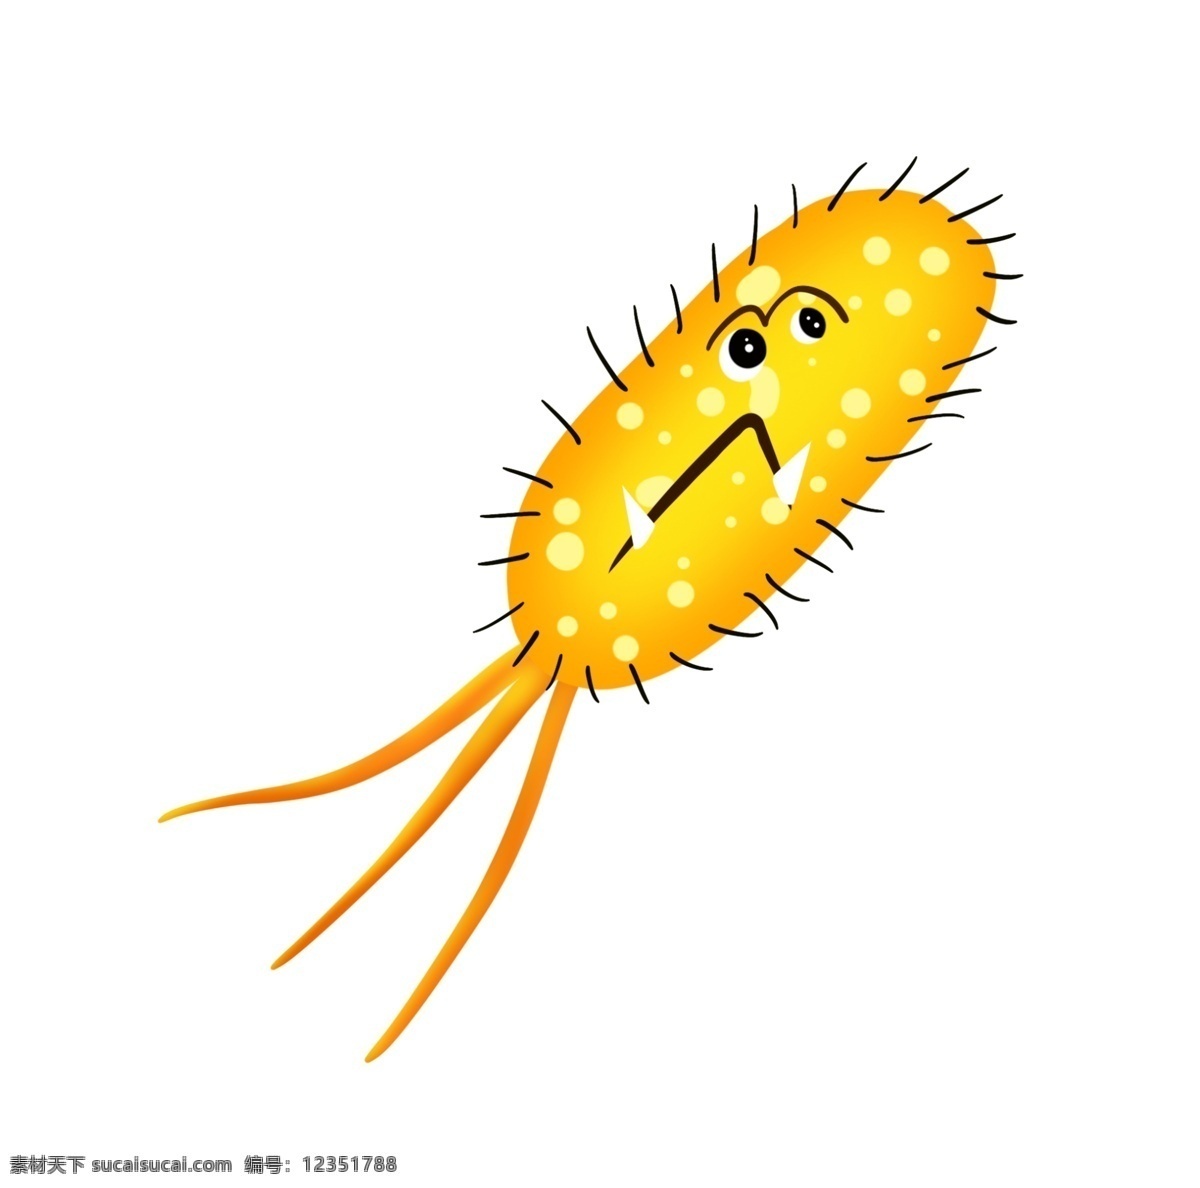 红色 尾巴 细菌 插画 黄色的细菌 卡通插画 有害细菌 细菌插画 病菌插画 病菌细菌 长尾巴的细菌